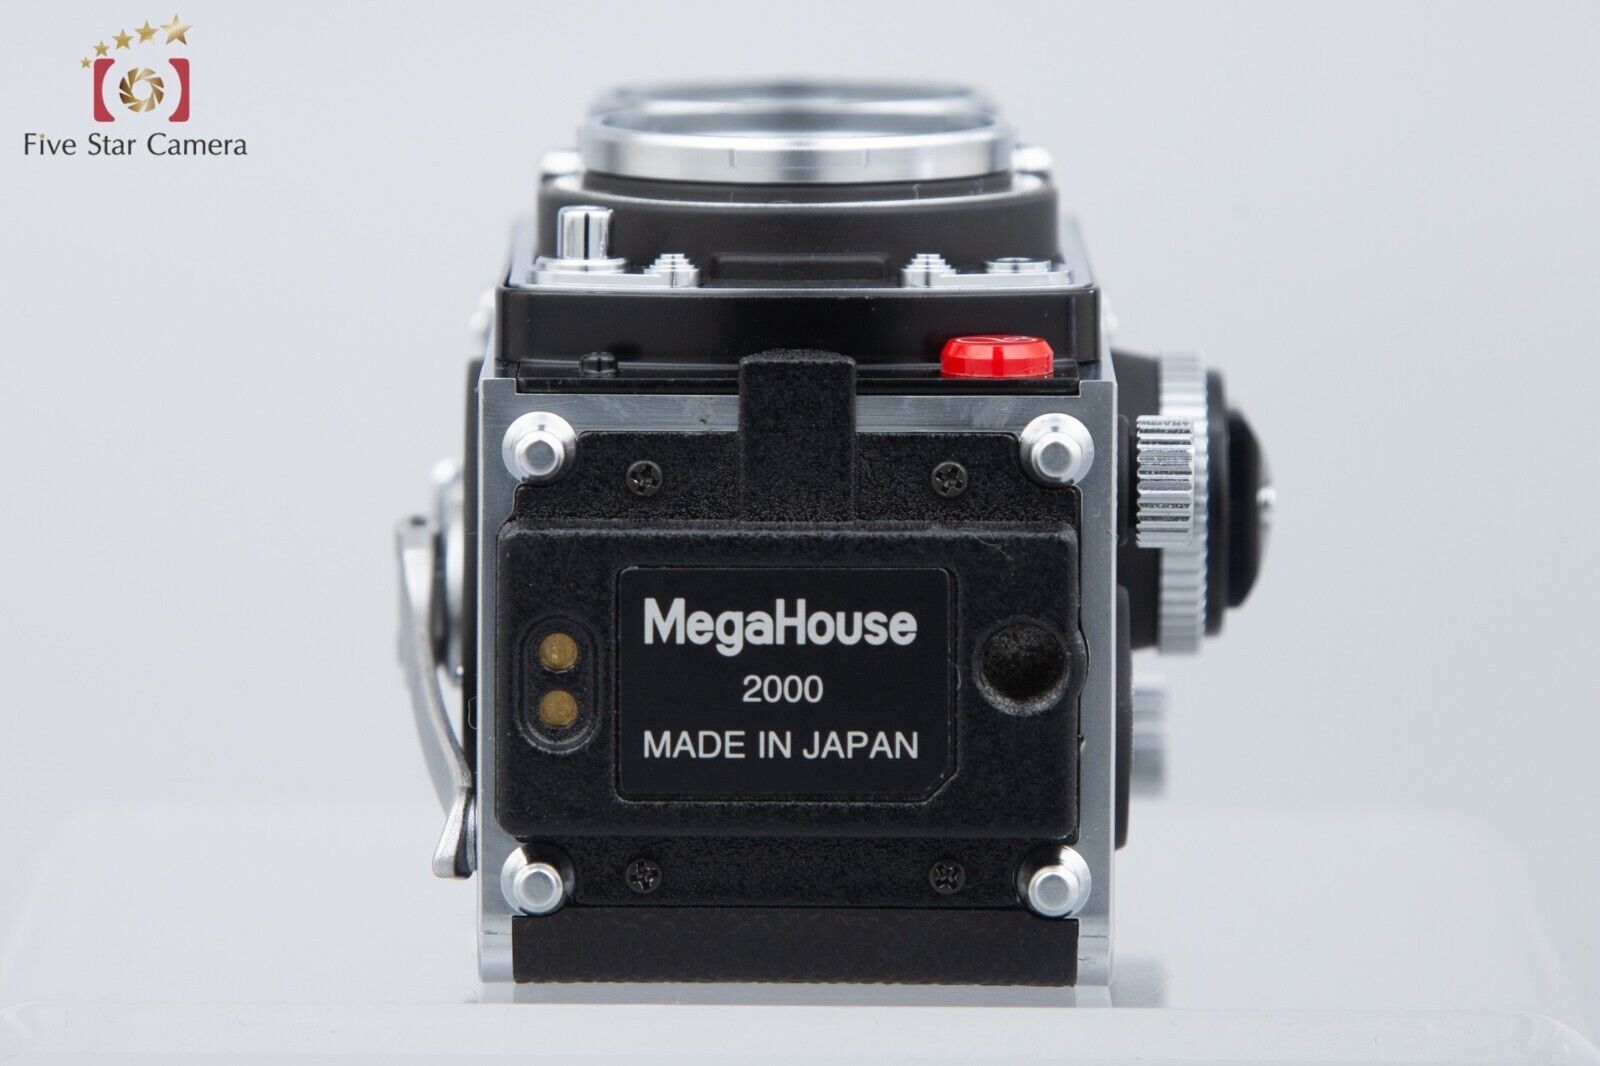 Mega House SHARAN ROLLEIFLEX 2.8 F Model Miniature MINOX Film Camera w/ Box